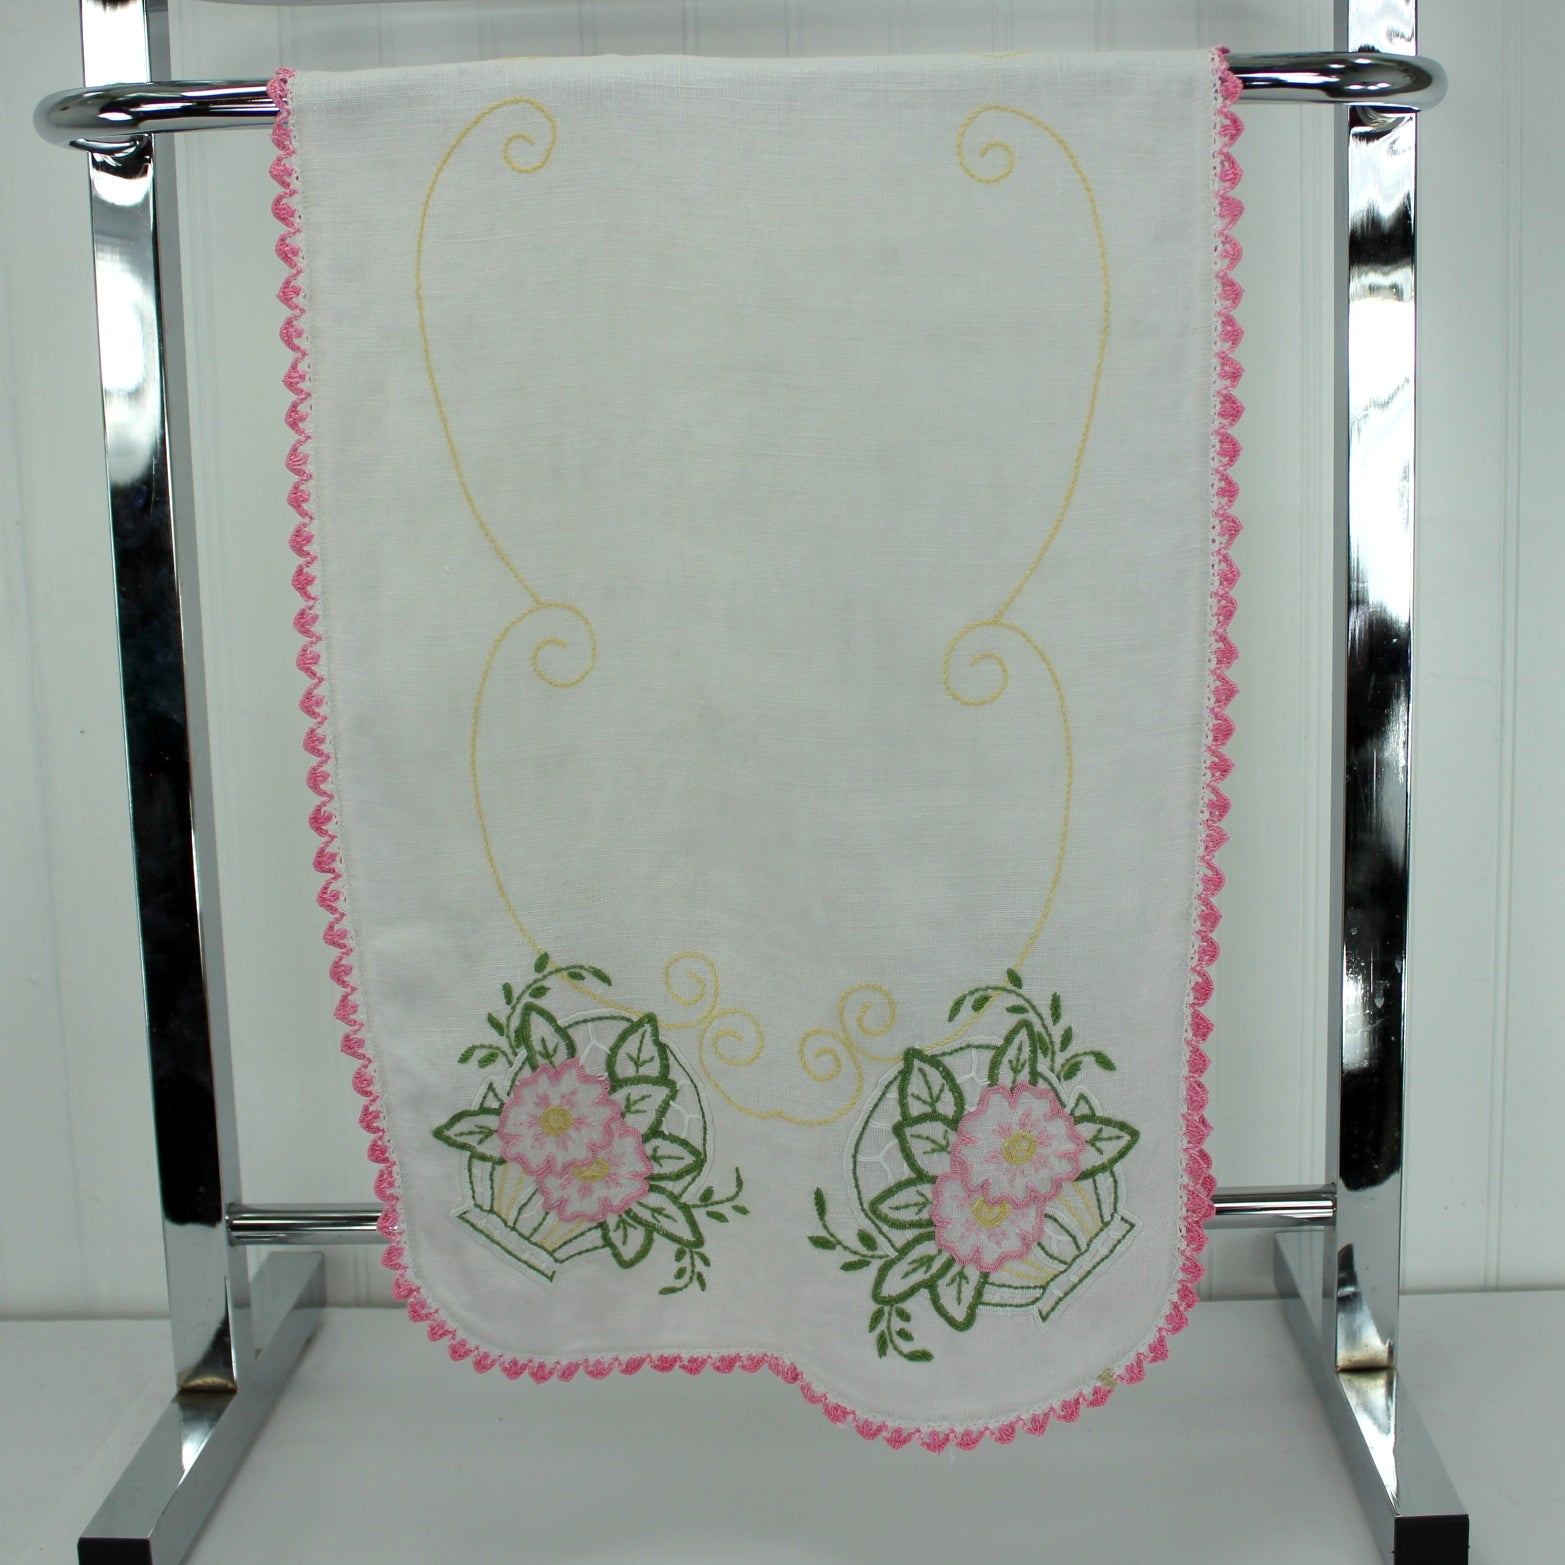 White Linen Table Center Runner Embroidered Flower Baskets Pink Green Crochet Edging